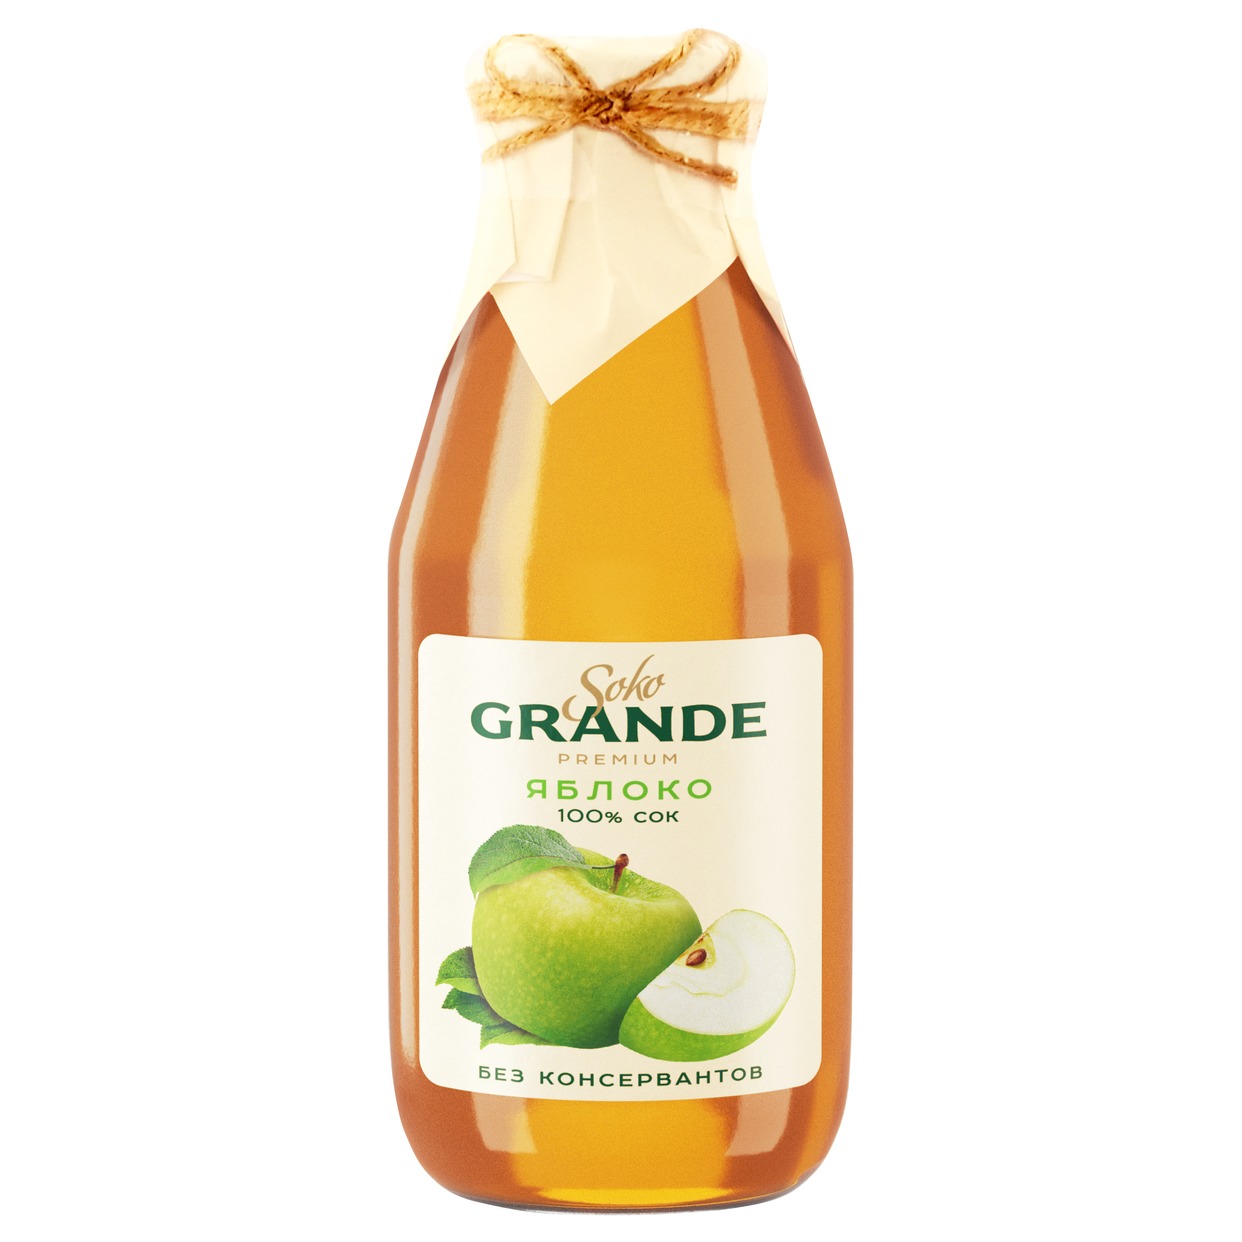 Soko Grande Сок яблочный восстановленный осветленный 0,3л по акции в Пятерочке